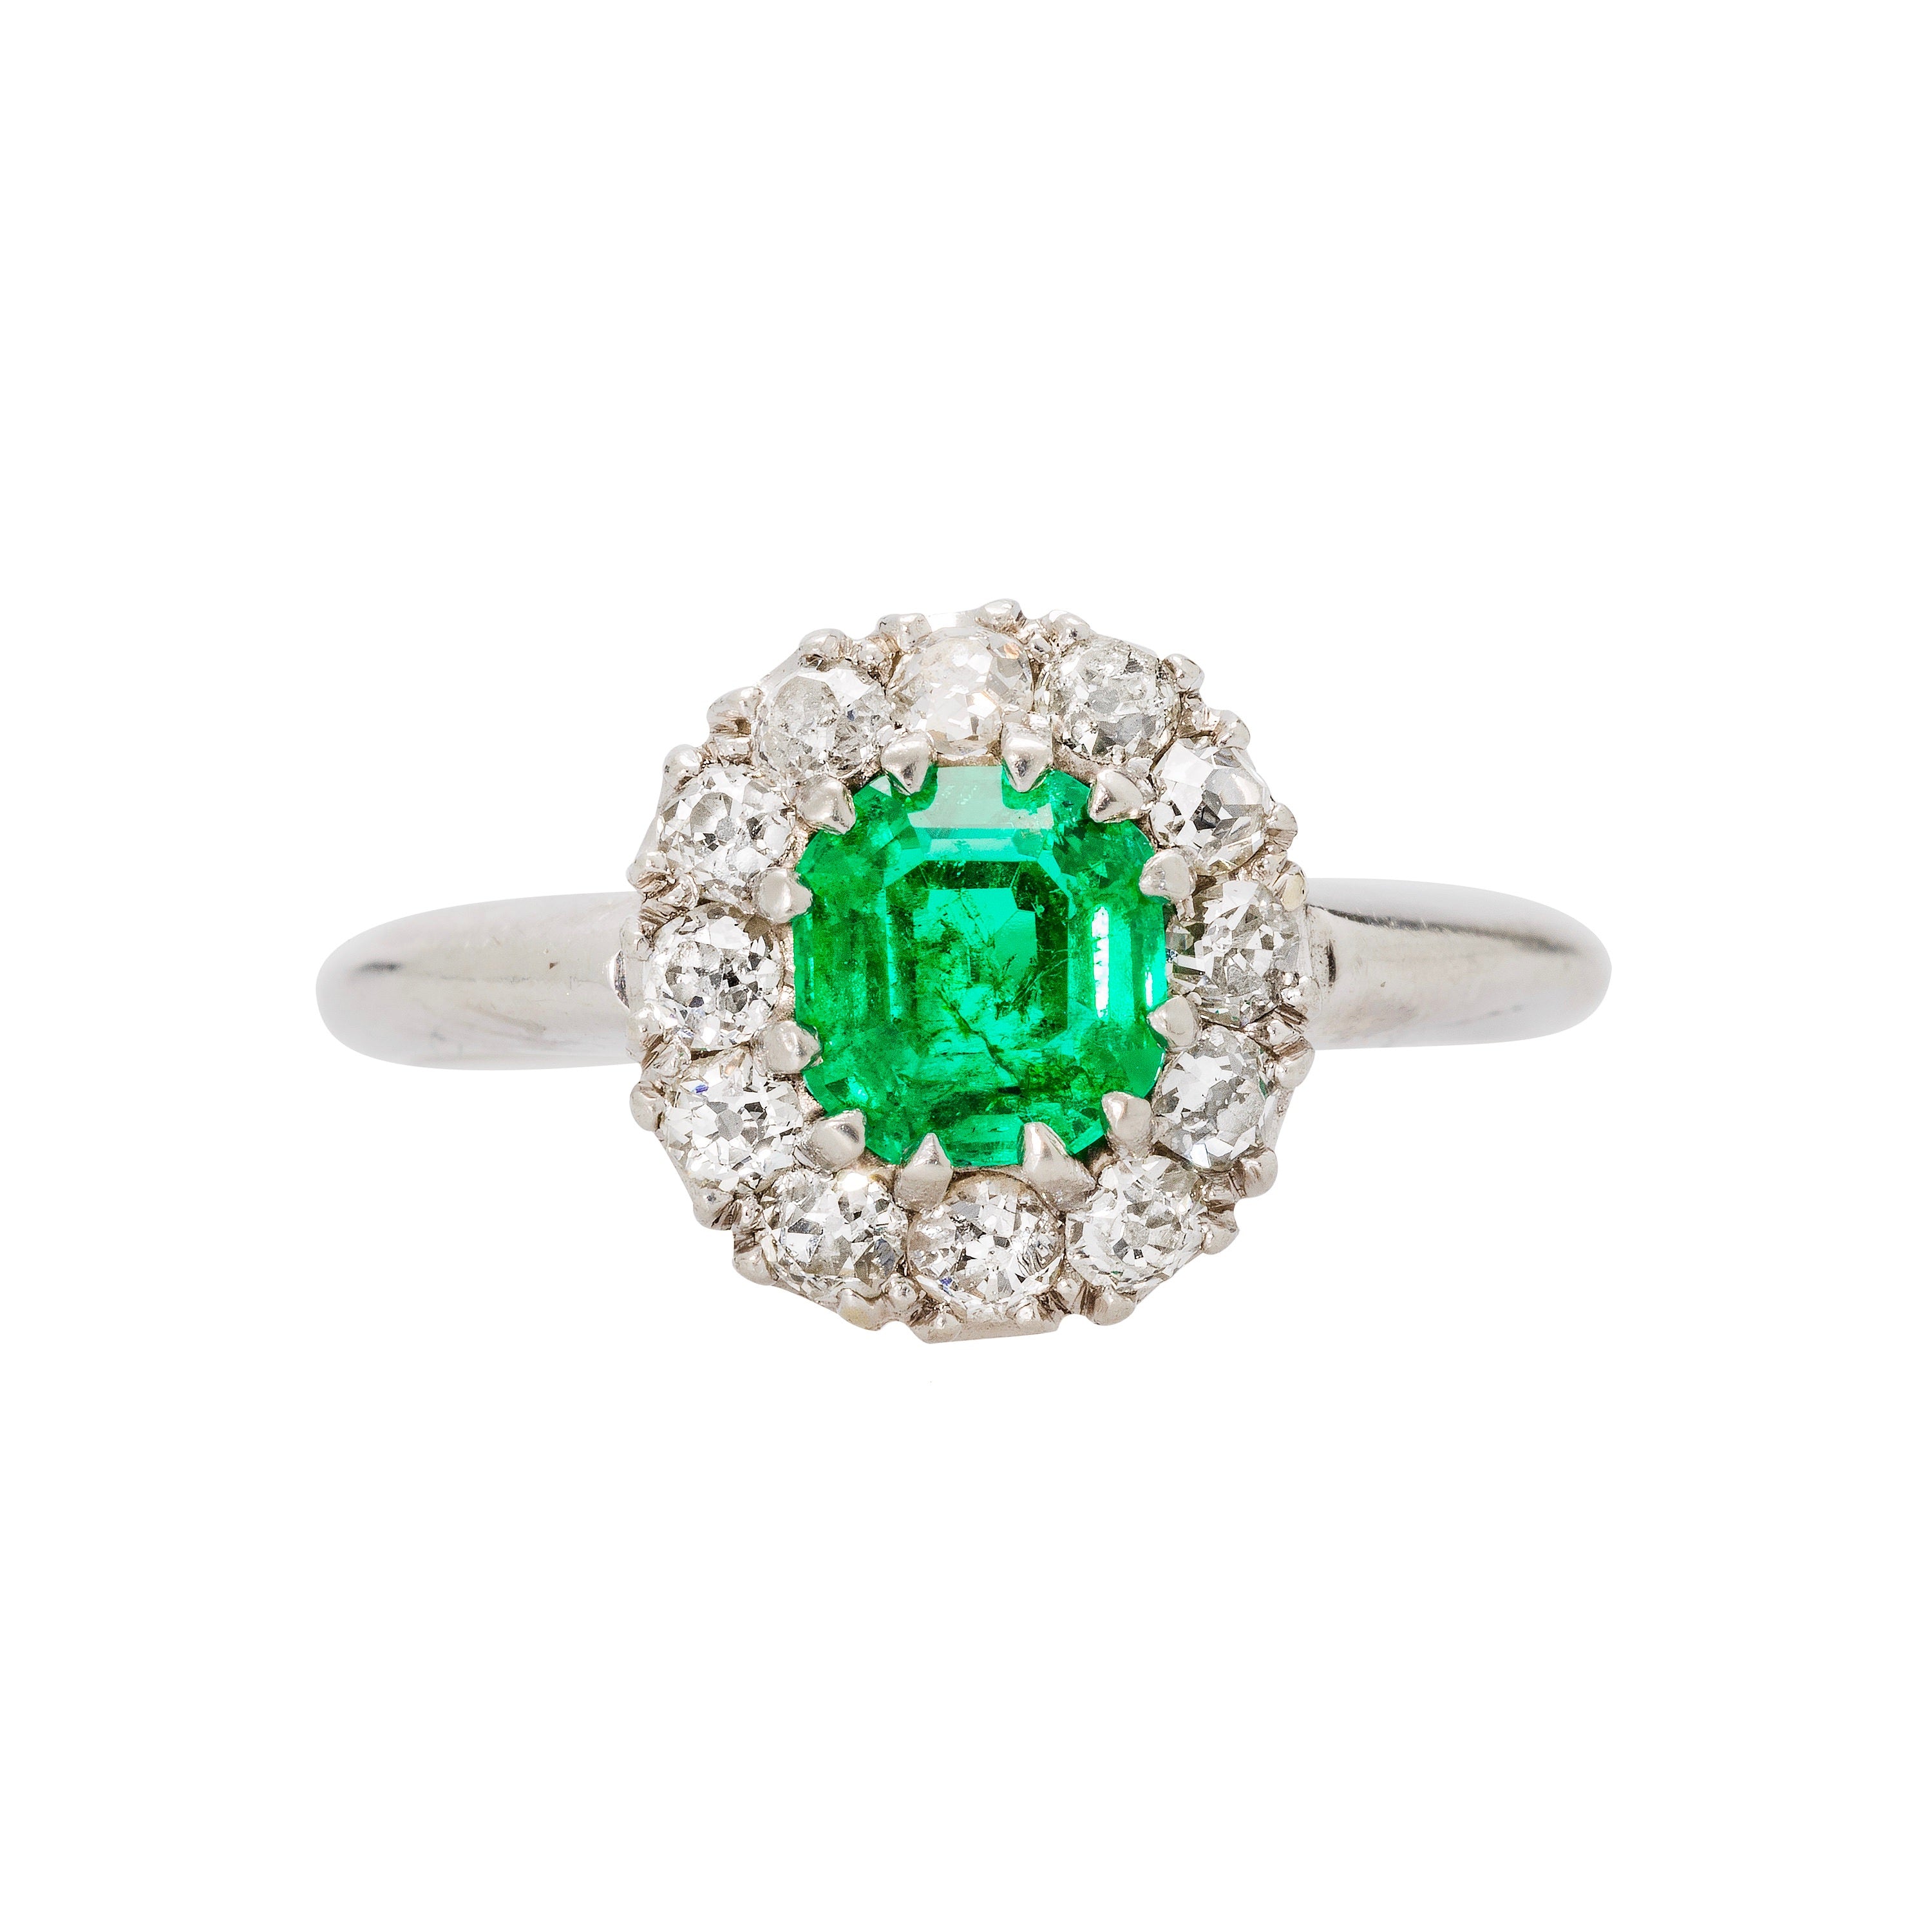 Authentic Art Deco era emerald, diamond and platinum ring.